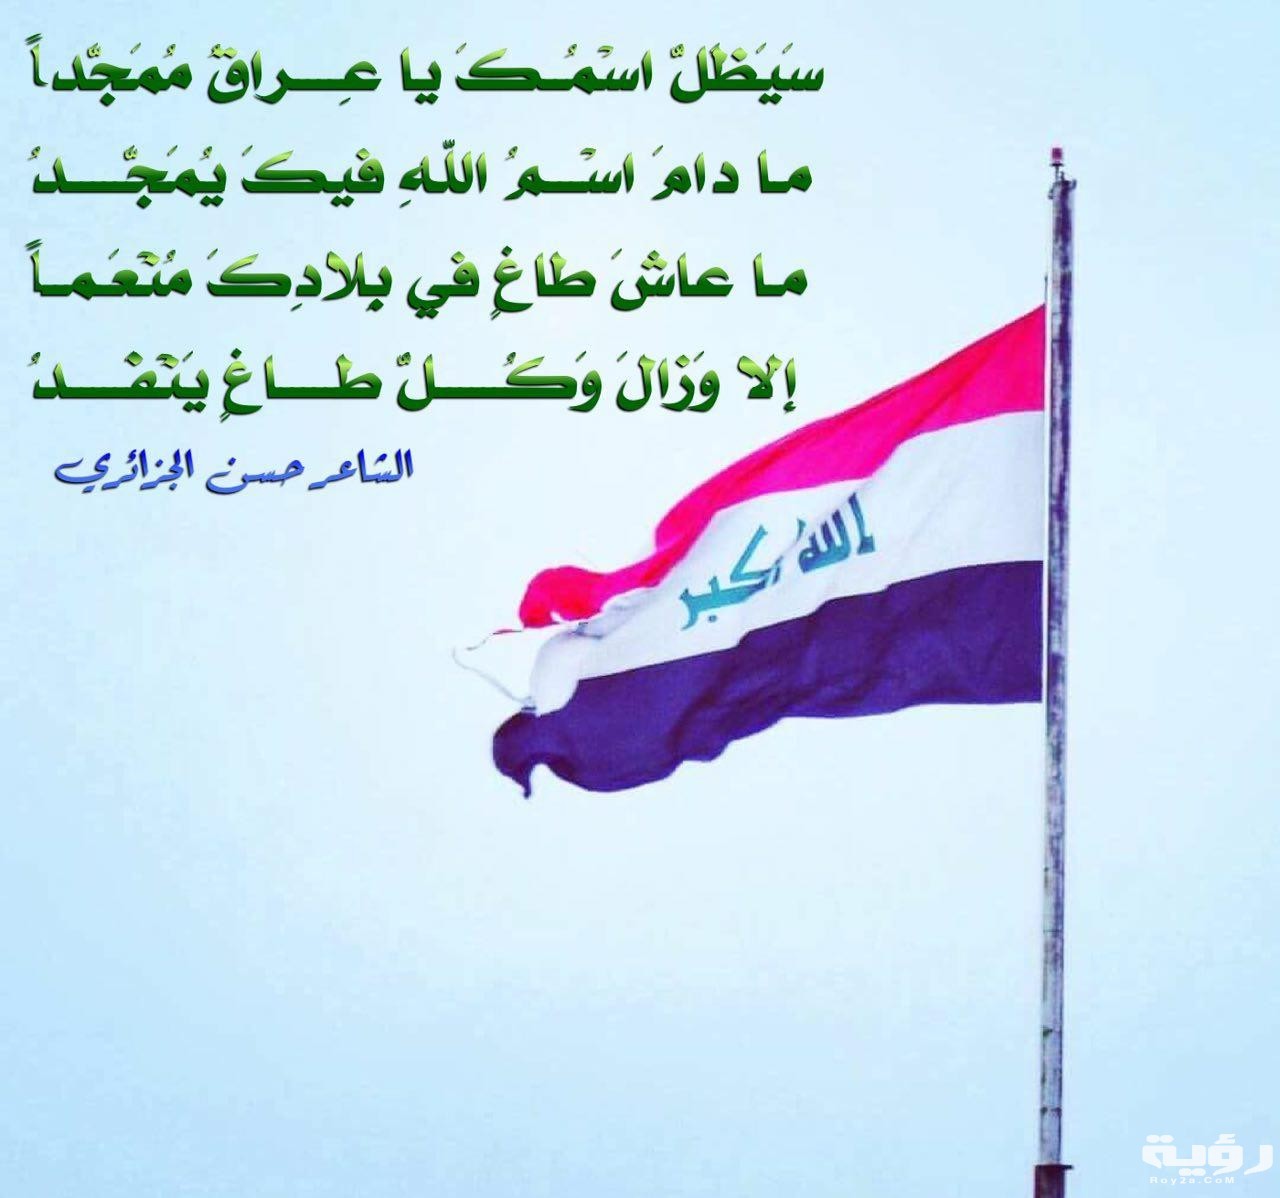 عبارات-عن-اليوم-الوطني-العراقي.jpg